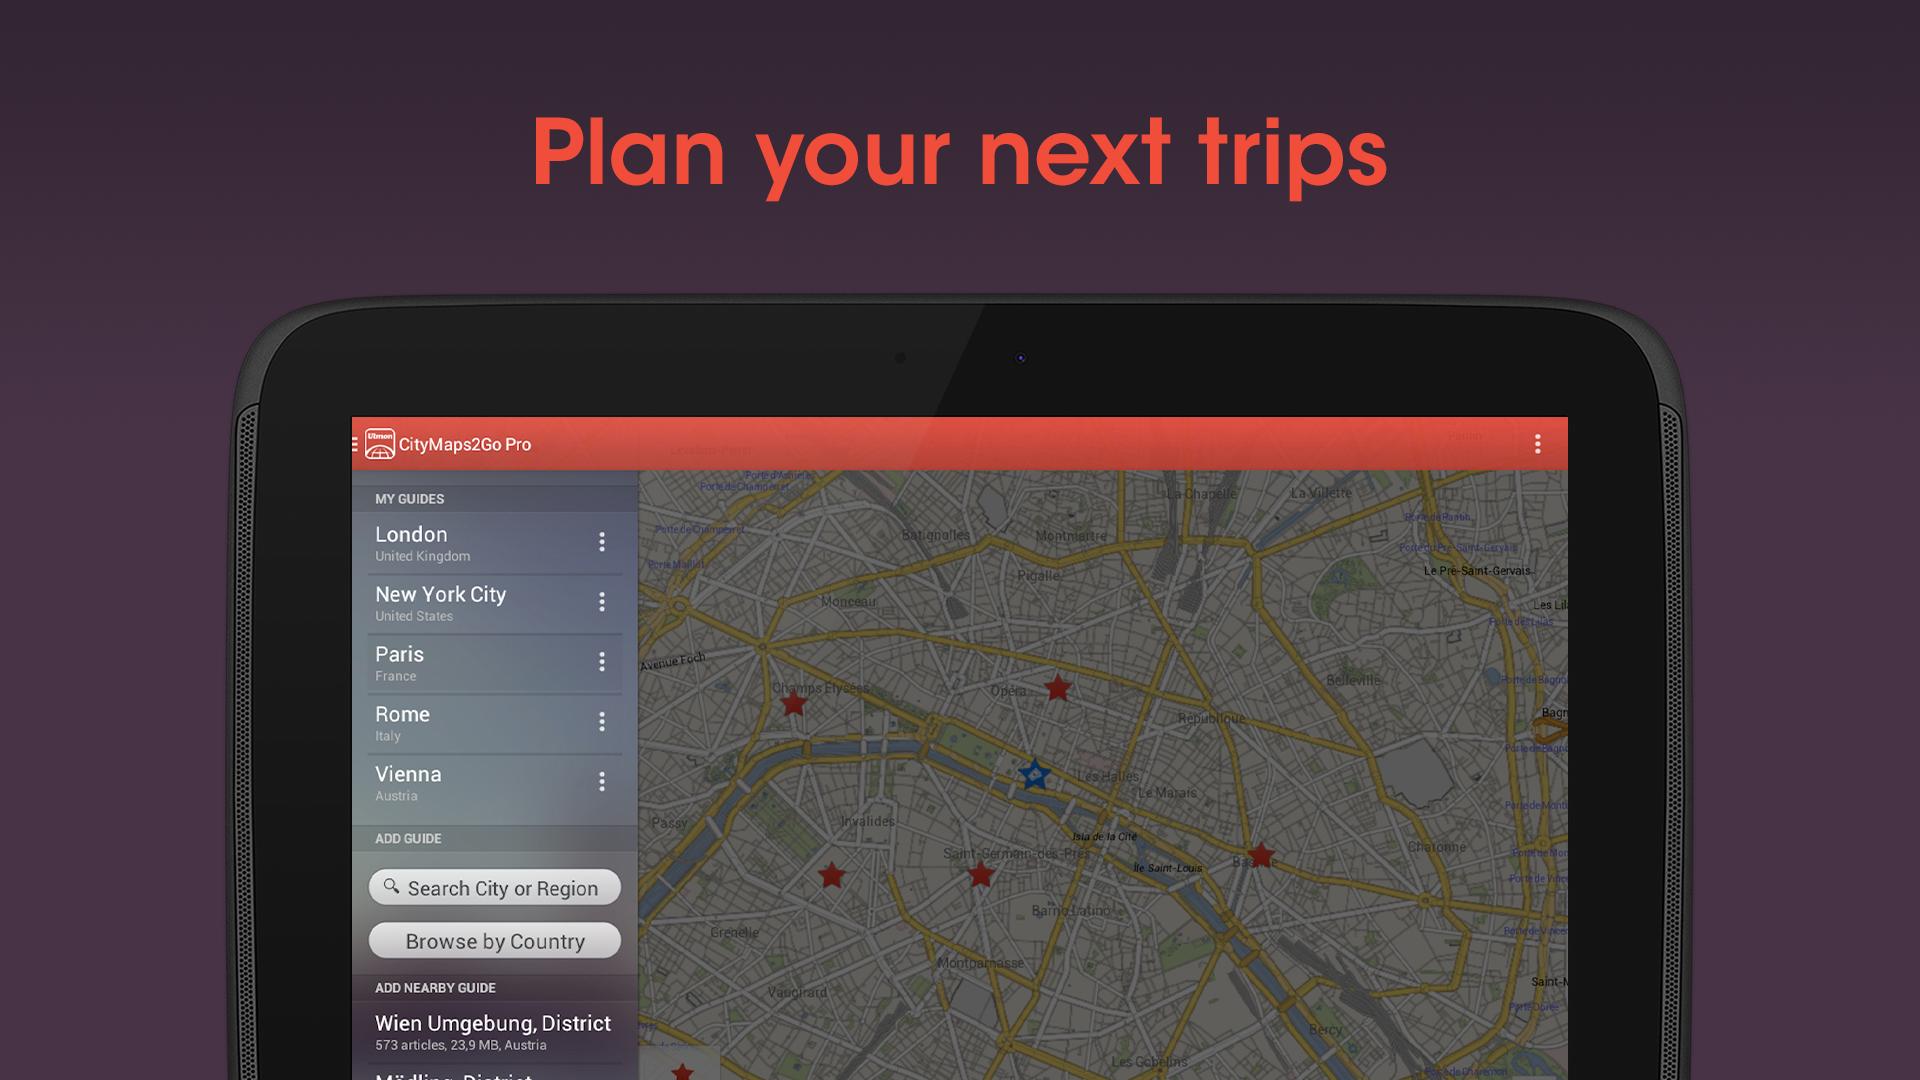 Maps карты для андроид. City Maps 2go. Офлайн карты. City Maps 2go Pro offline Maps. City Maps приложение.